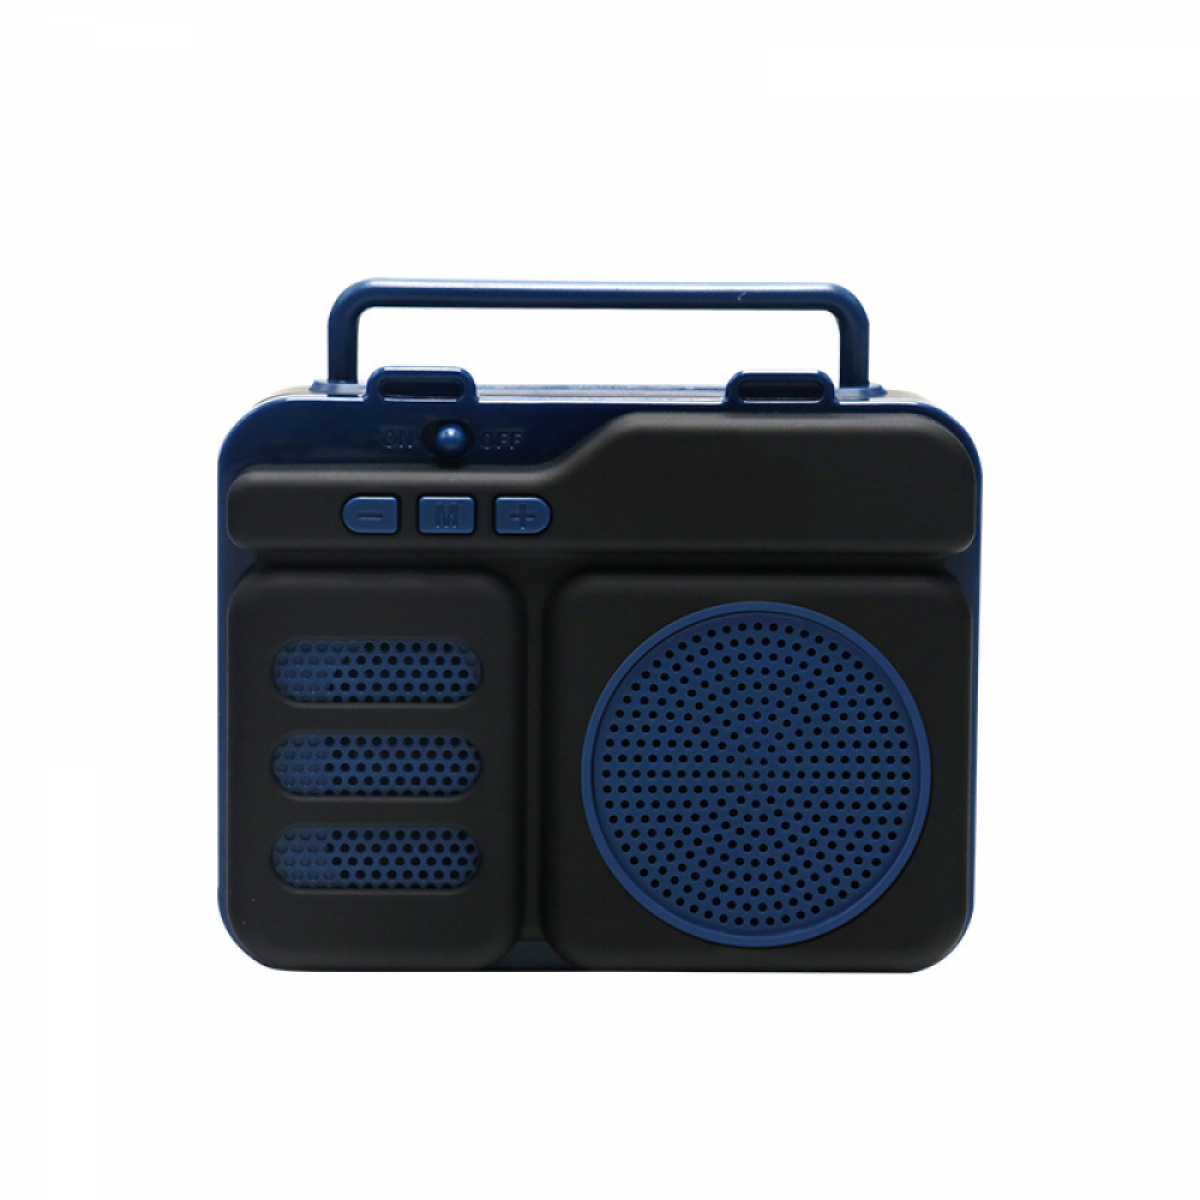 Hauts-parleurs General Haut-parleur Bluetooth rétro FM Radio vintage avec volume fort, amélioration des basses, bon son, Bluetooth 5.0, carte TF, entrée AUX, clé USB pour la maison, les voyages en plein air, la fête, cadeau (bleu)